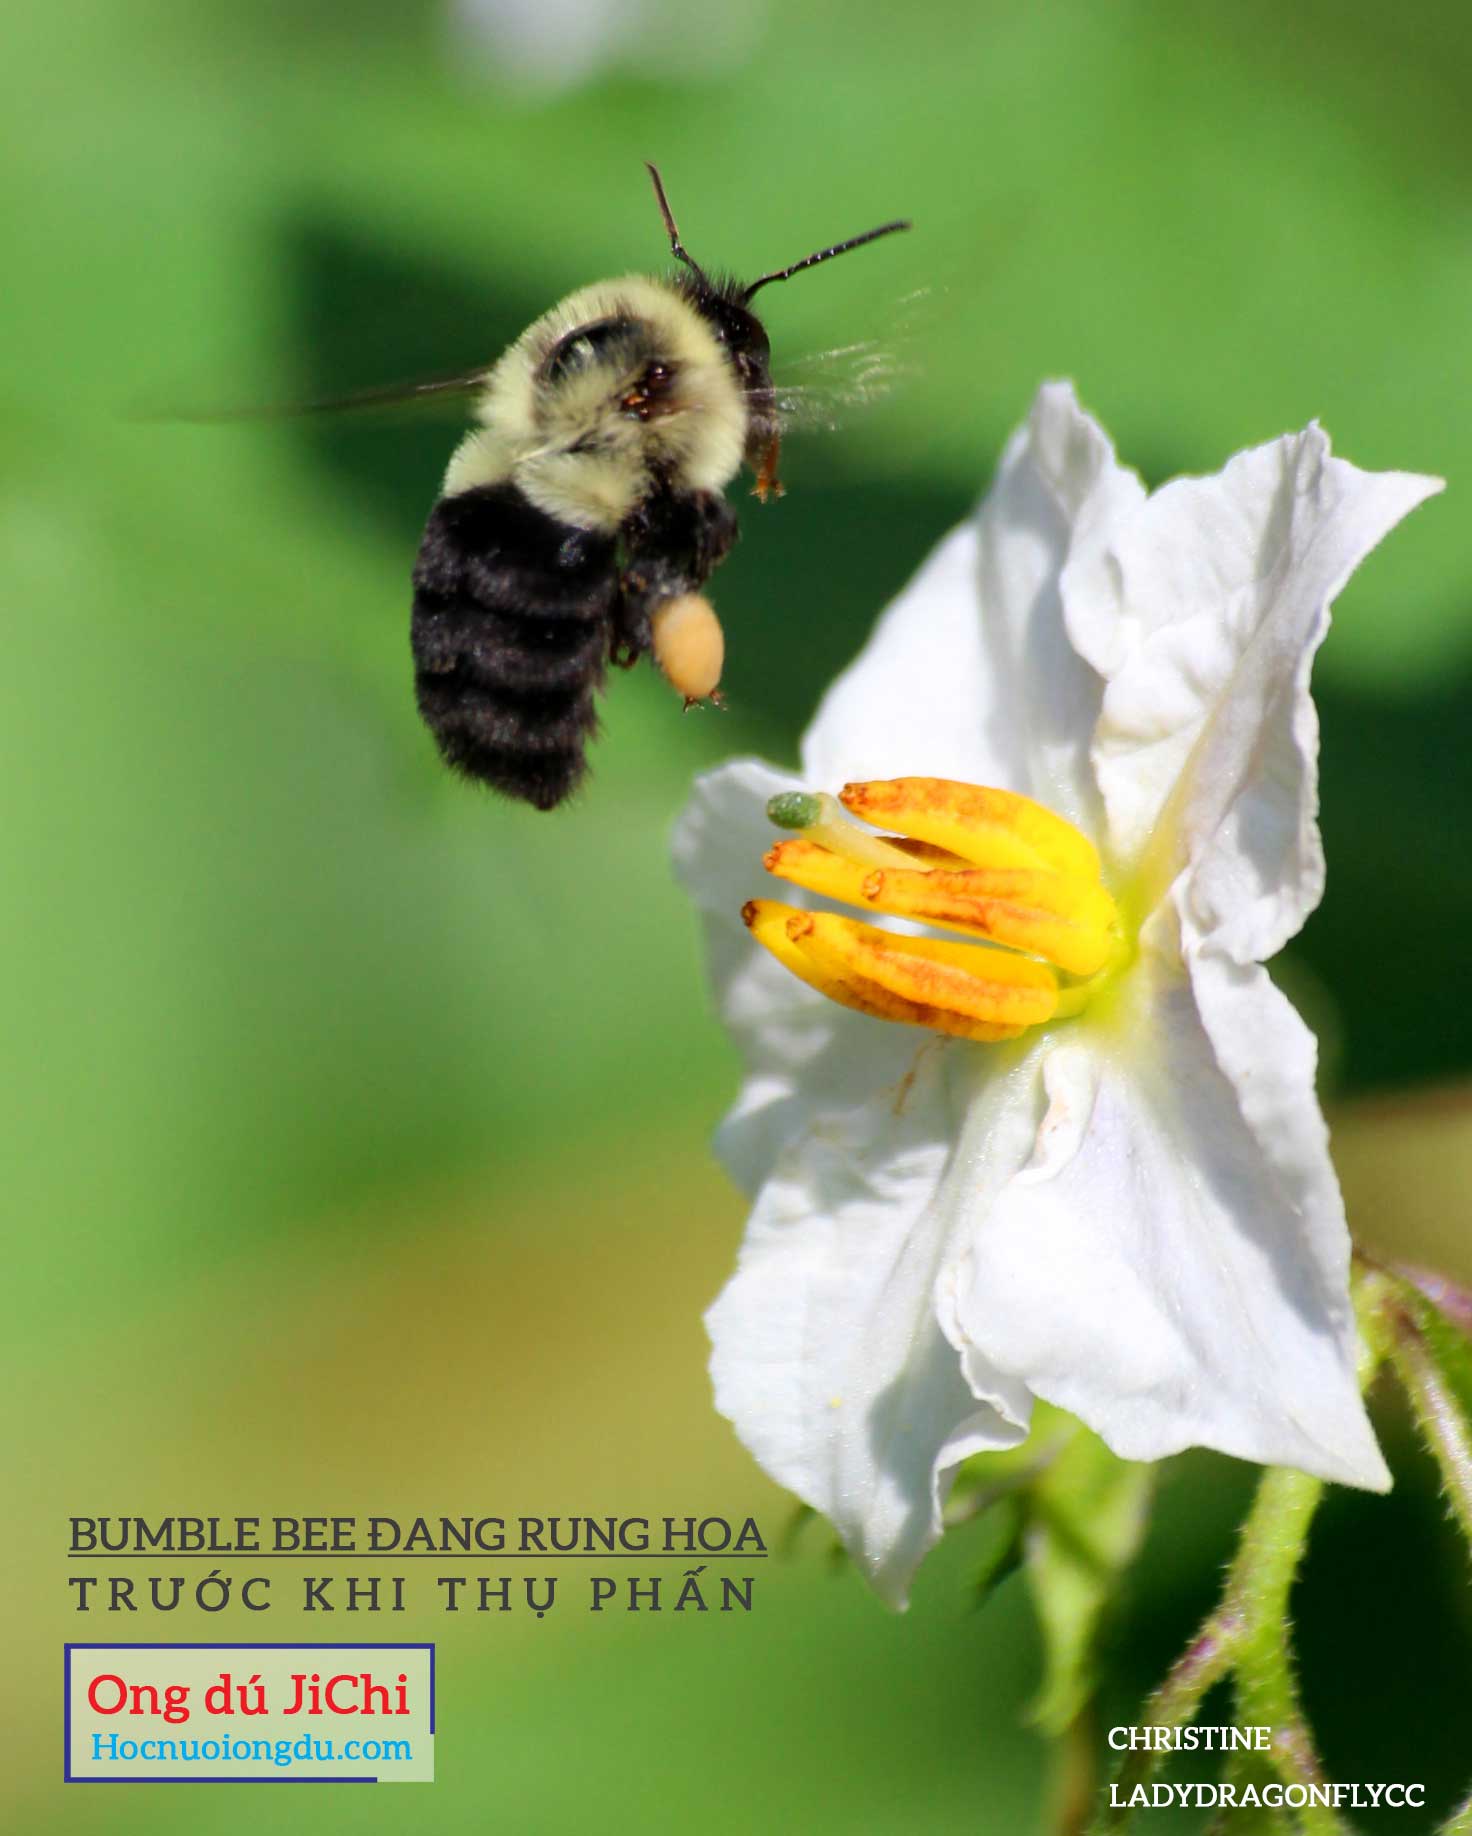 Đặc điểm của loài ong bumble bee đang rung hoa để thụ phấn cho cây